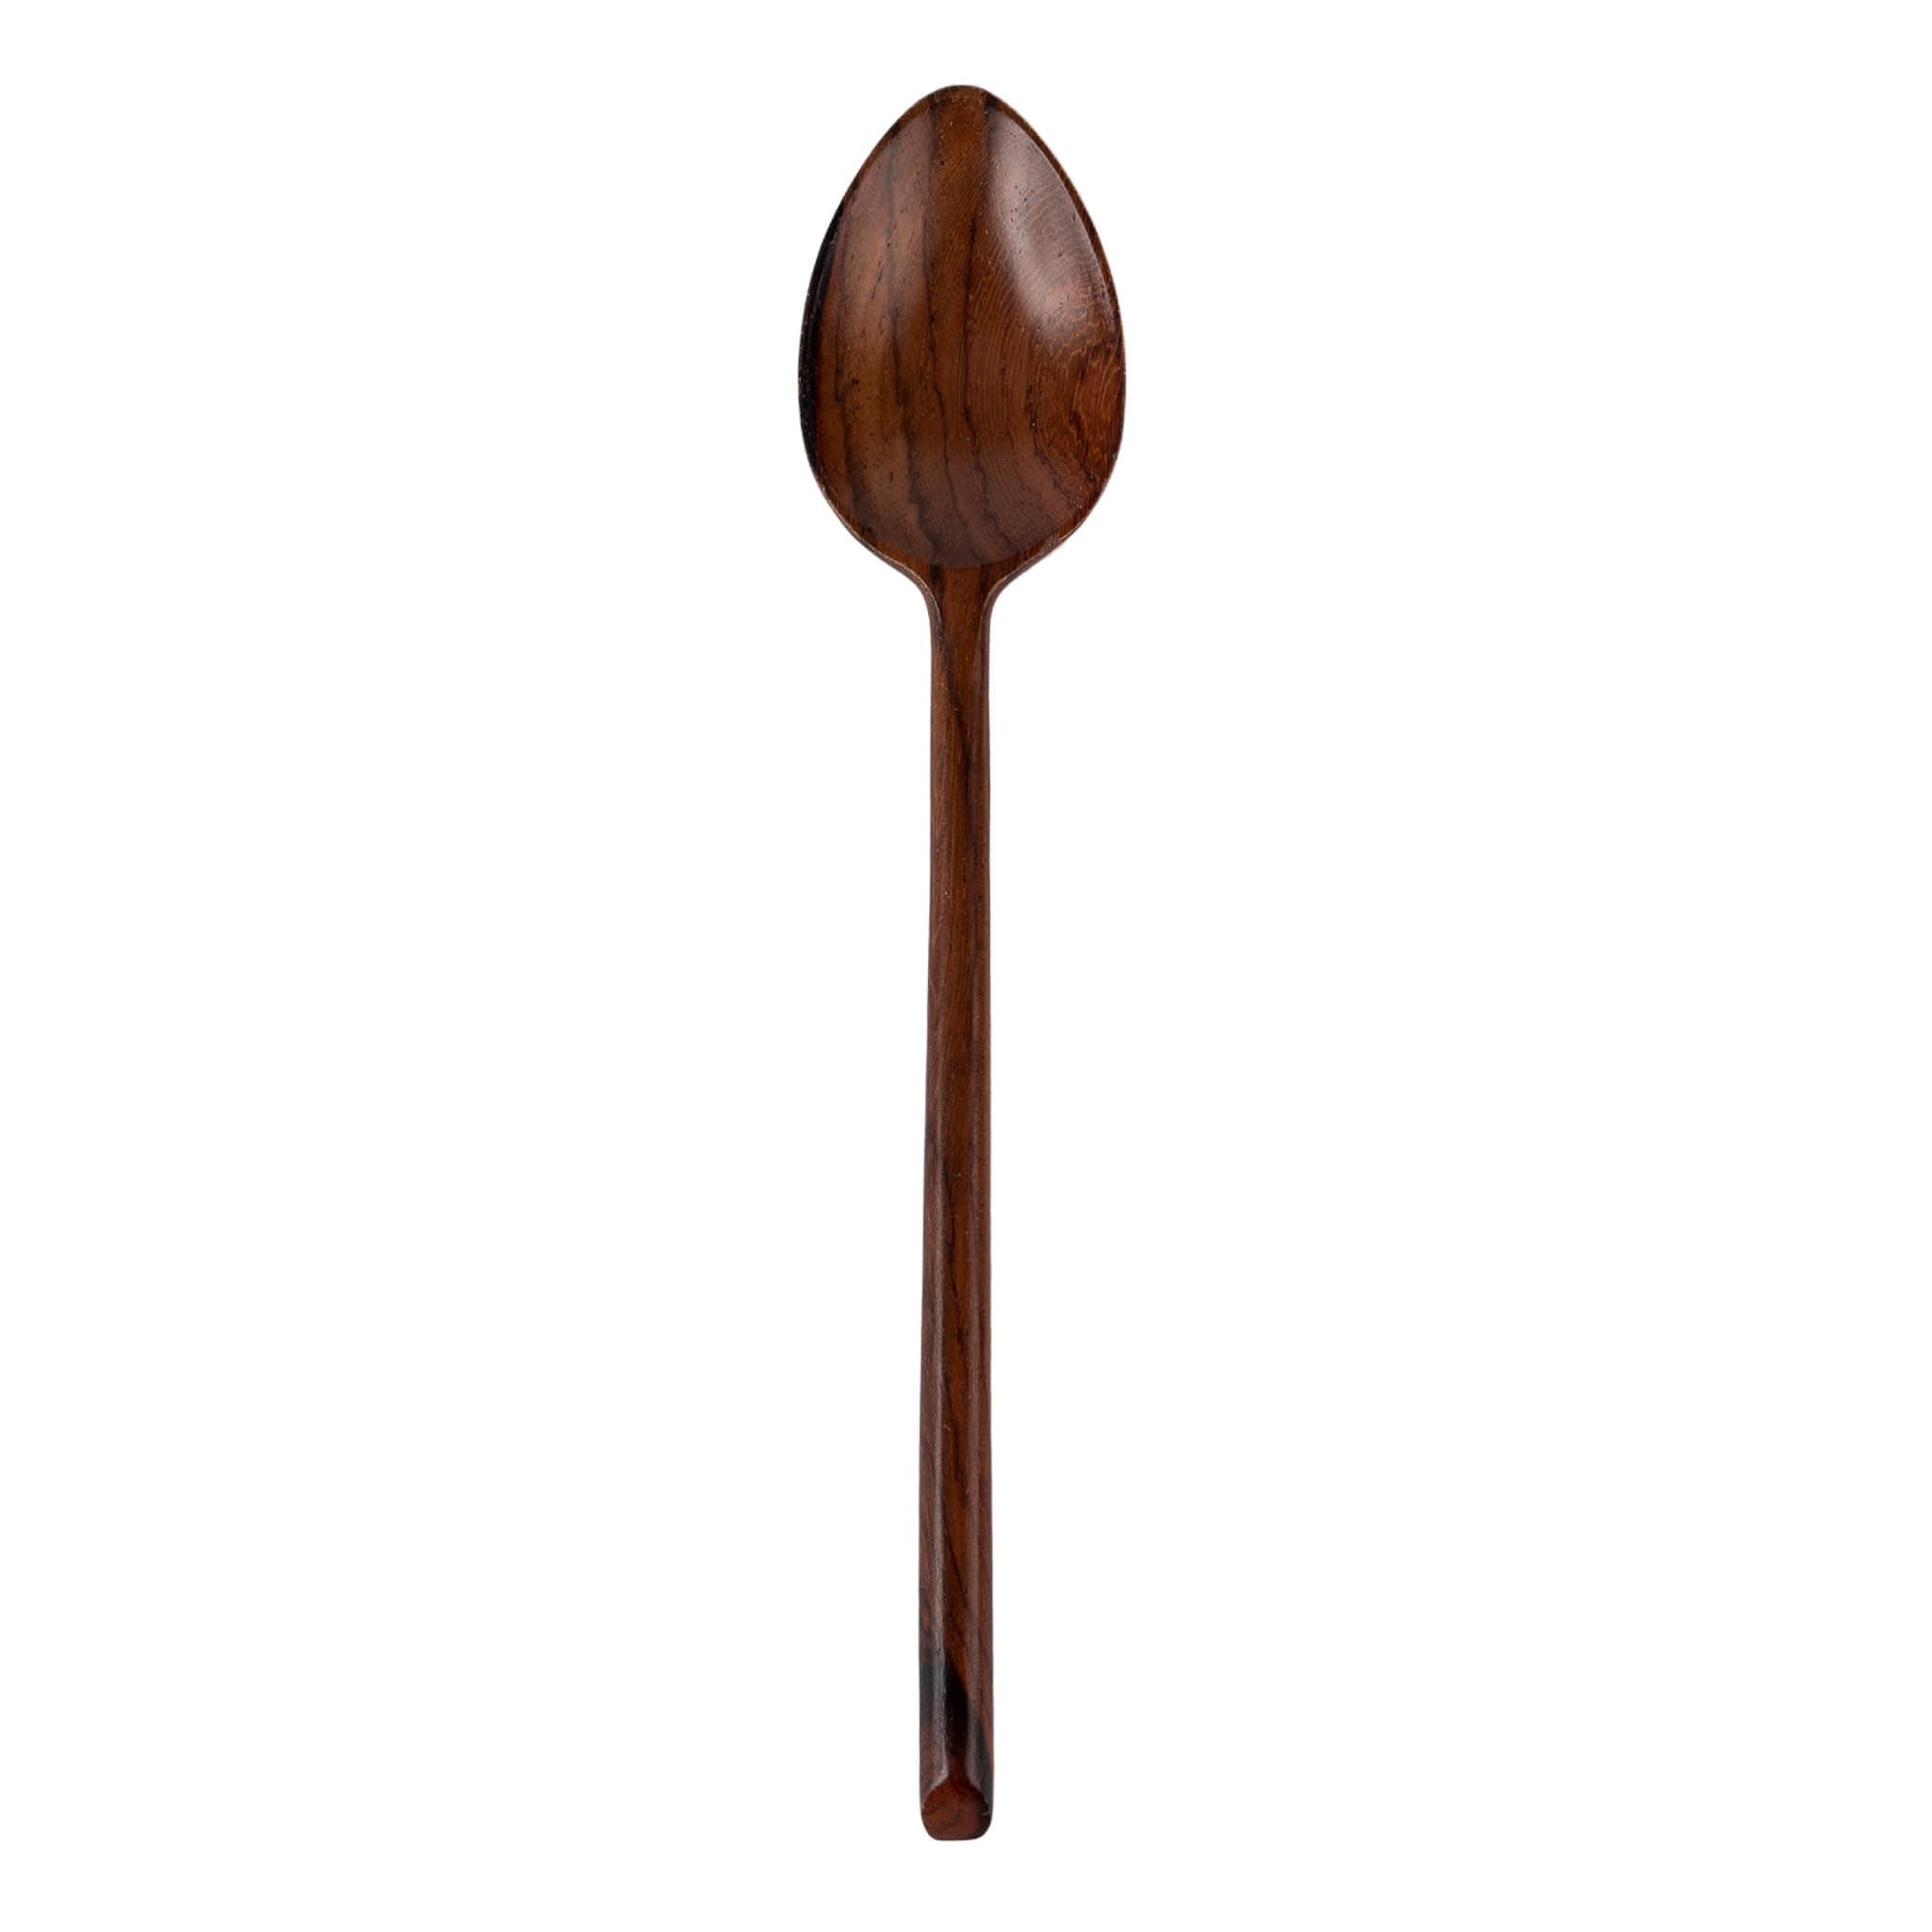 Sarah Petherick Long Handled Spoon, Rosewood